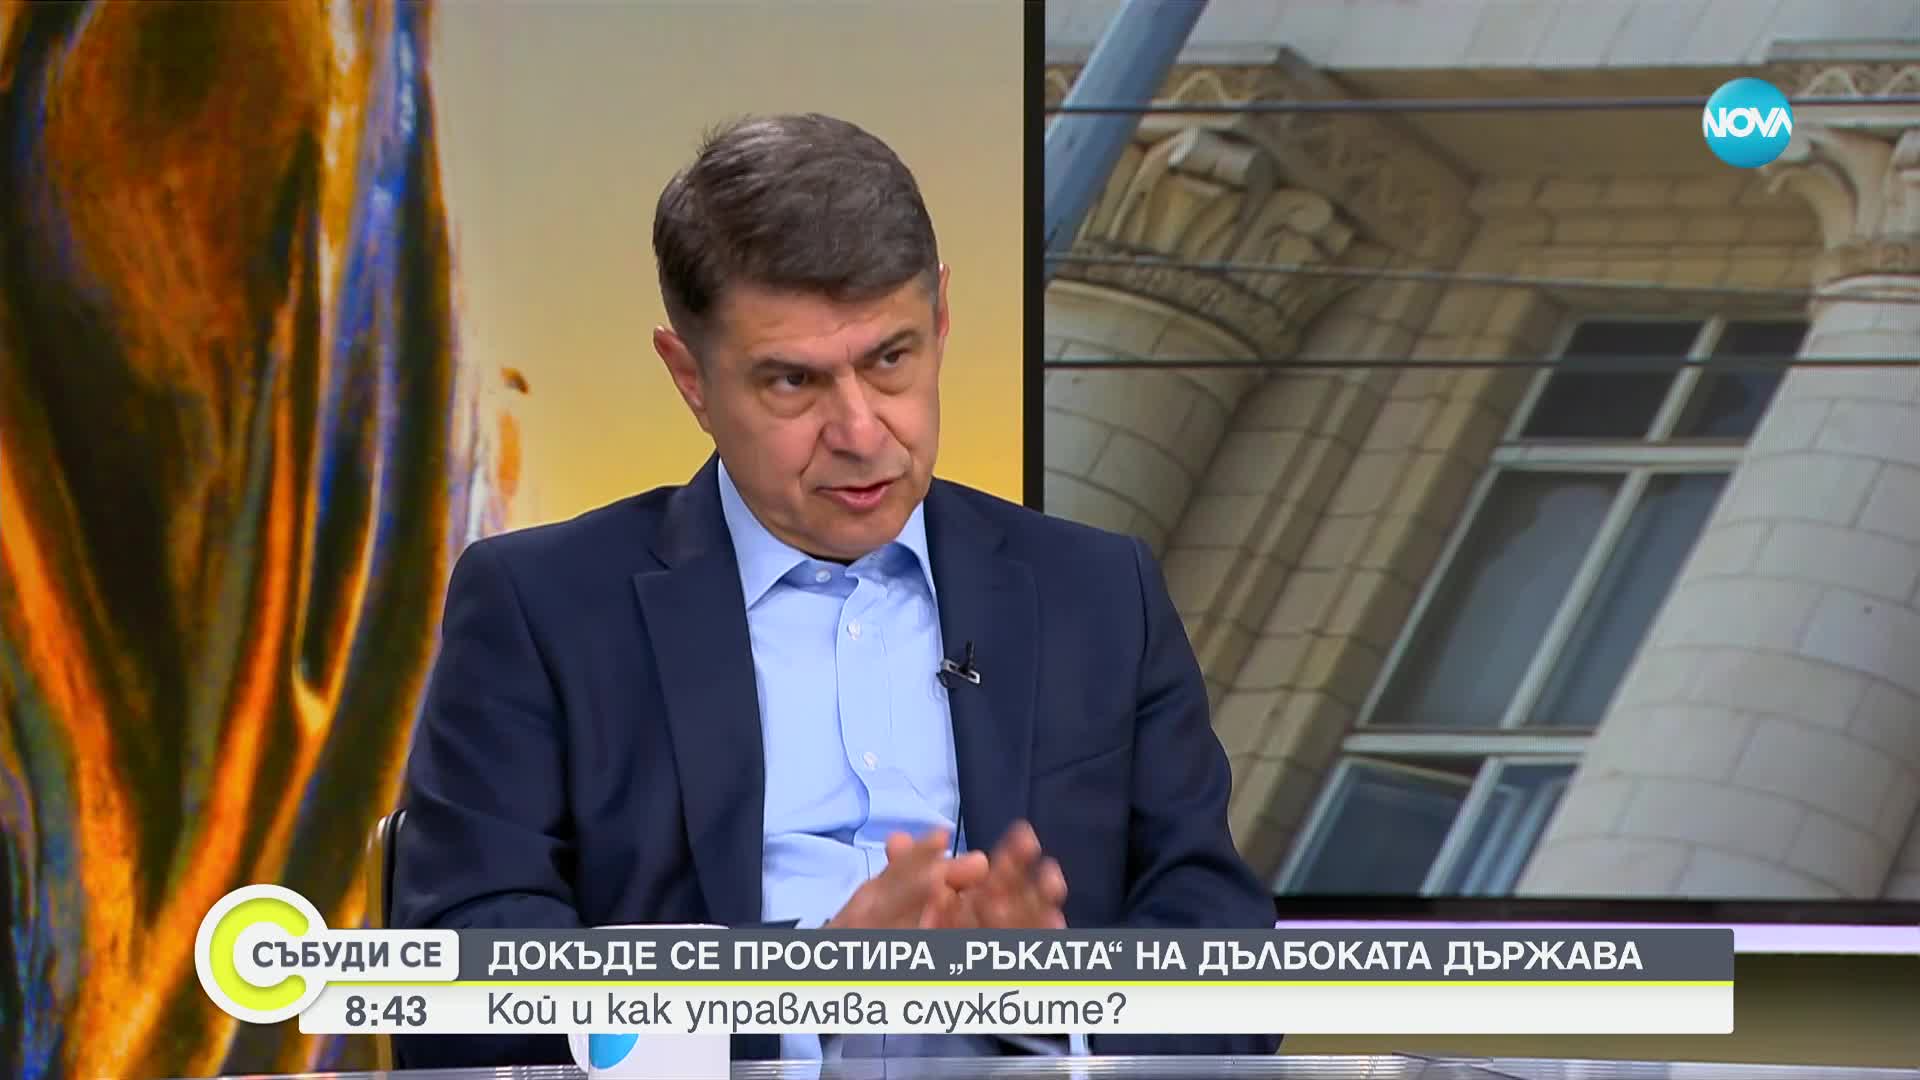 Димо Гяуров: Няма доказателства, че службите са записвали политици с цел да взривят бъдещия кабинет